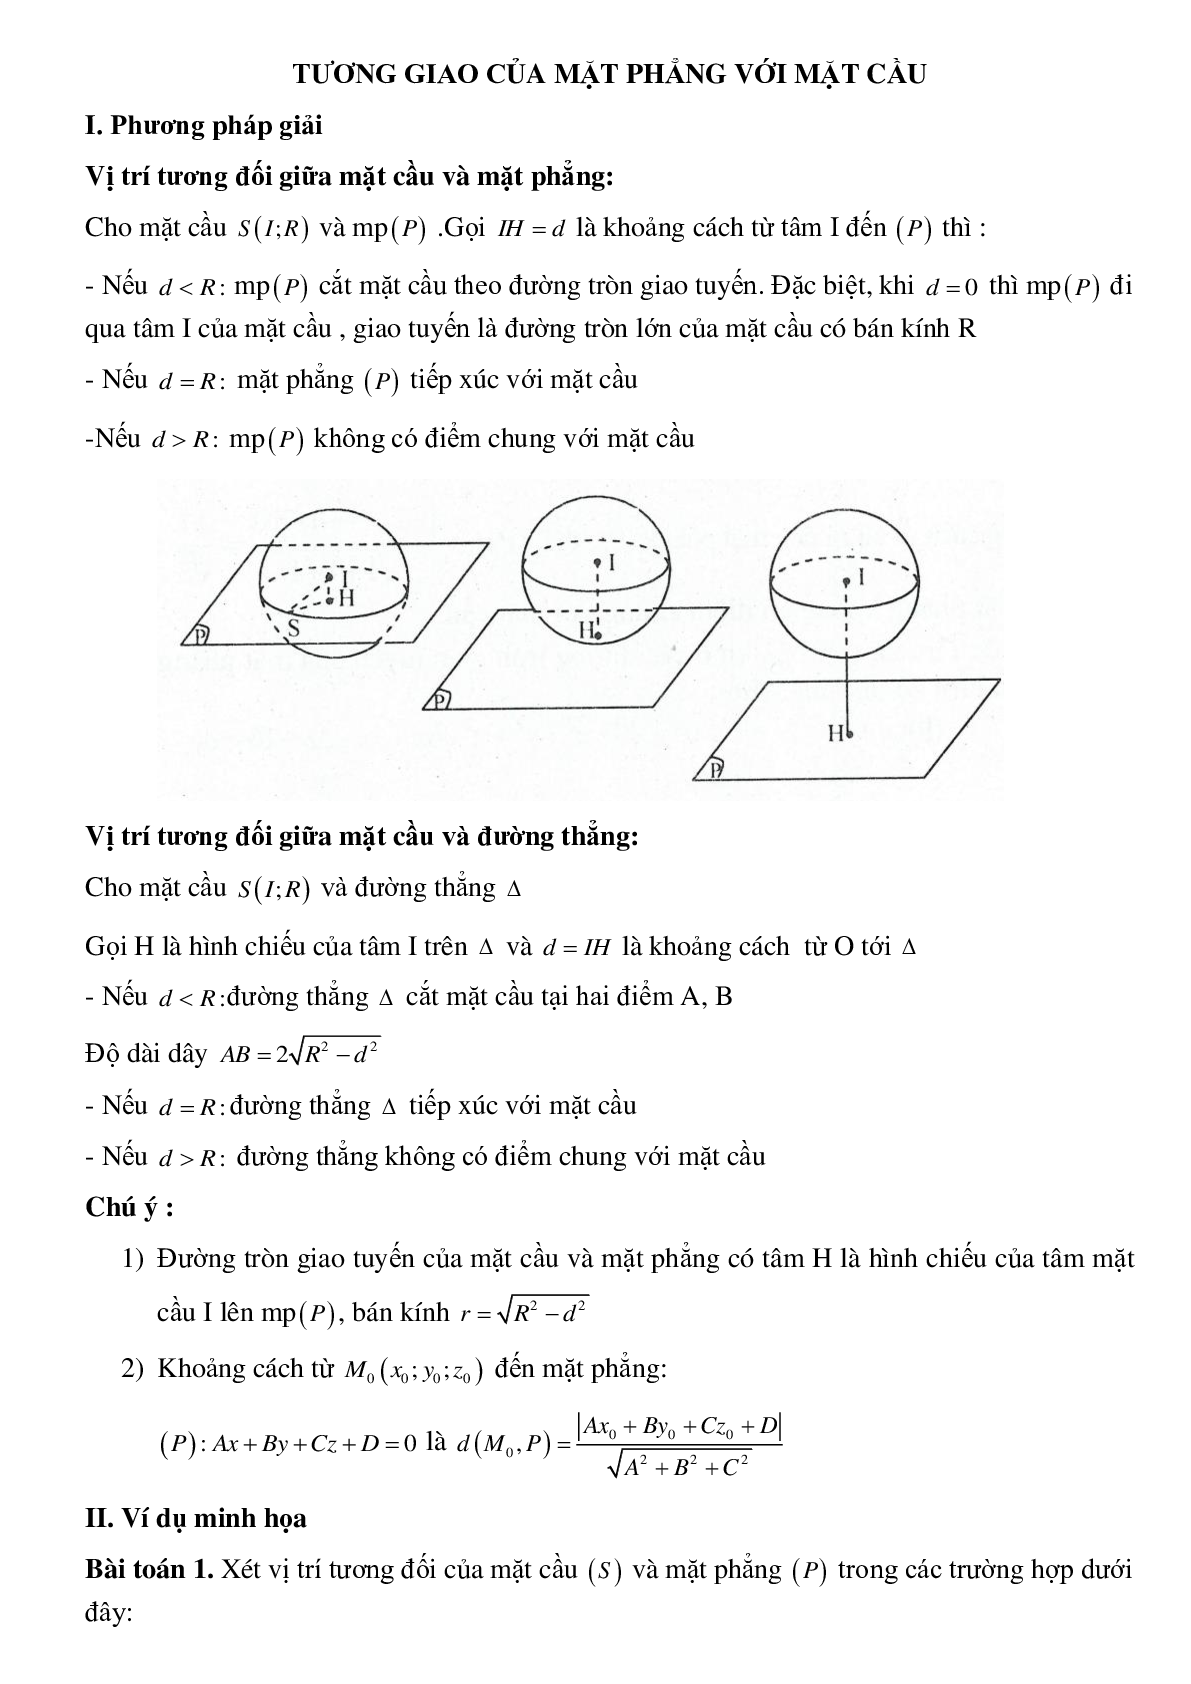 Dạng bài tập Tương giao của mặt phẳng với mặt cầu (trang 1)